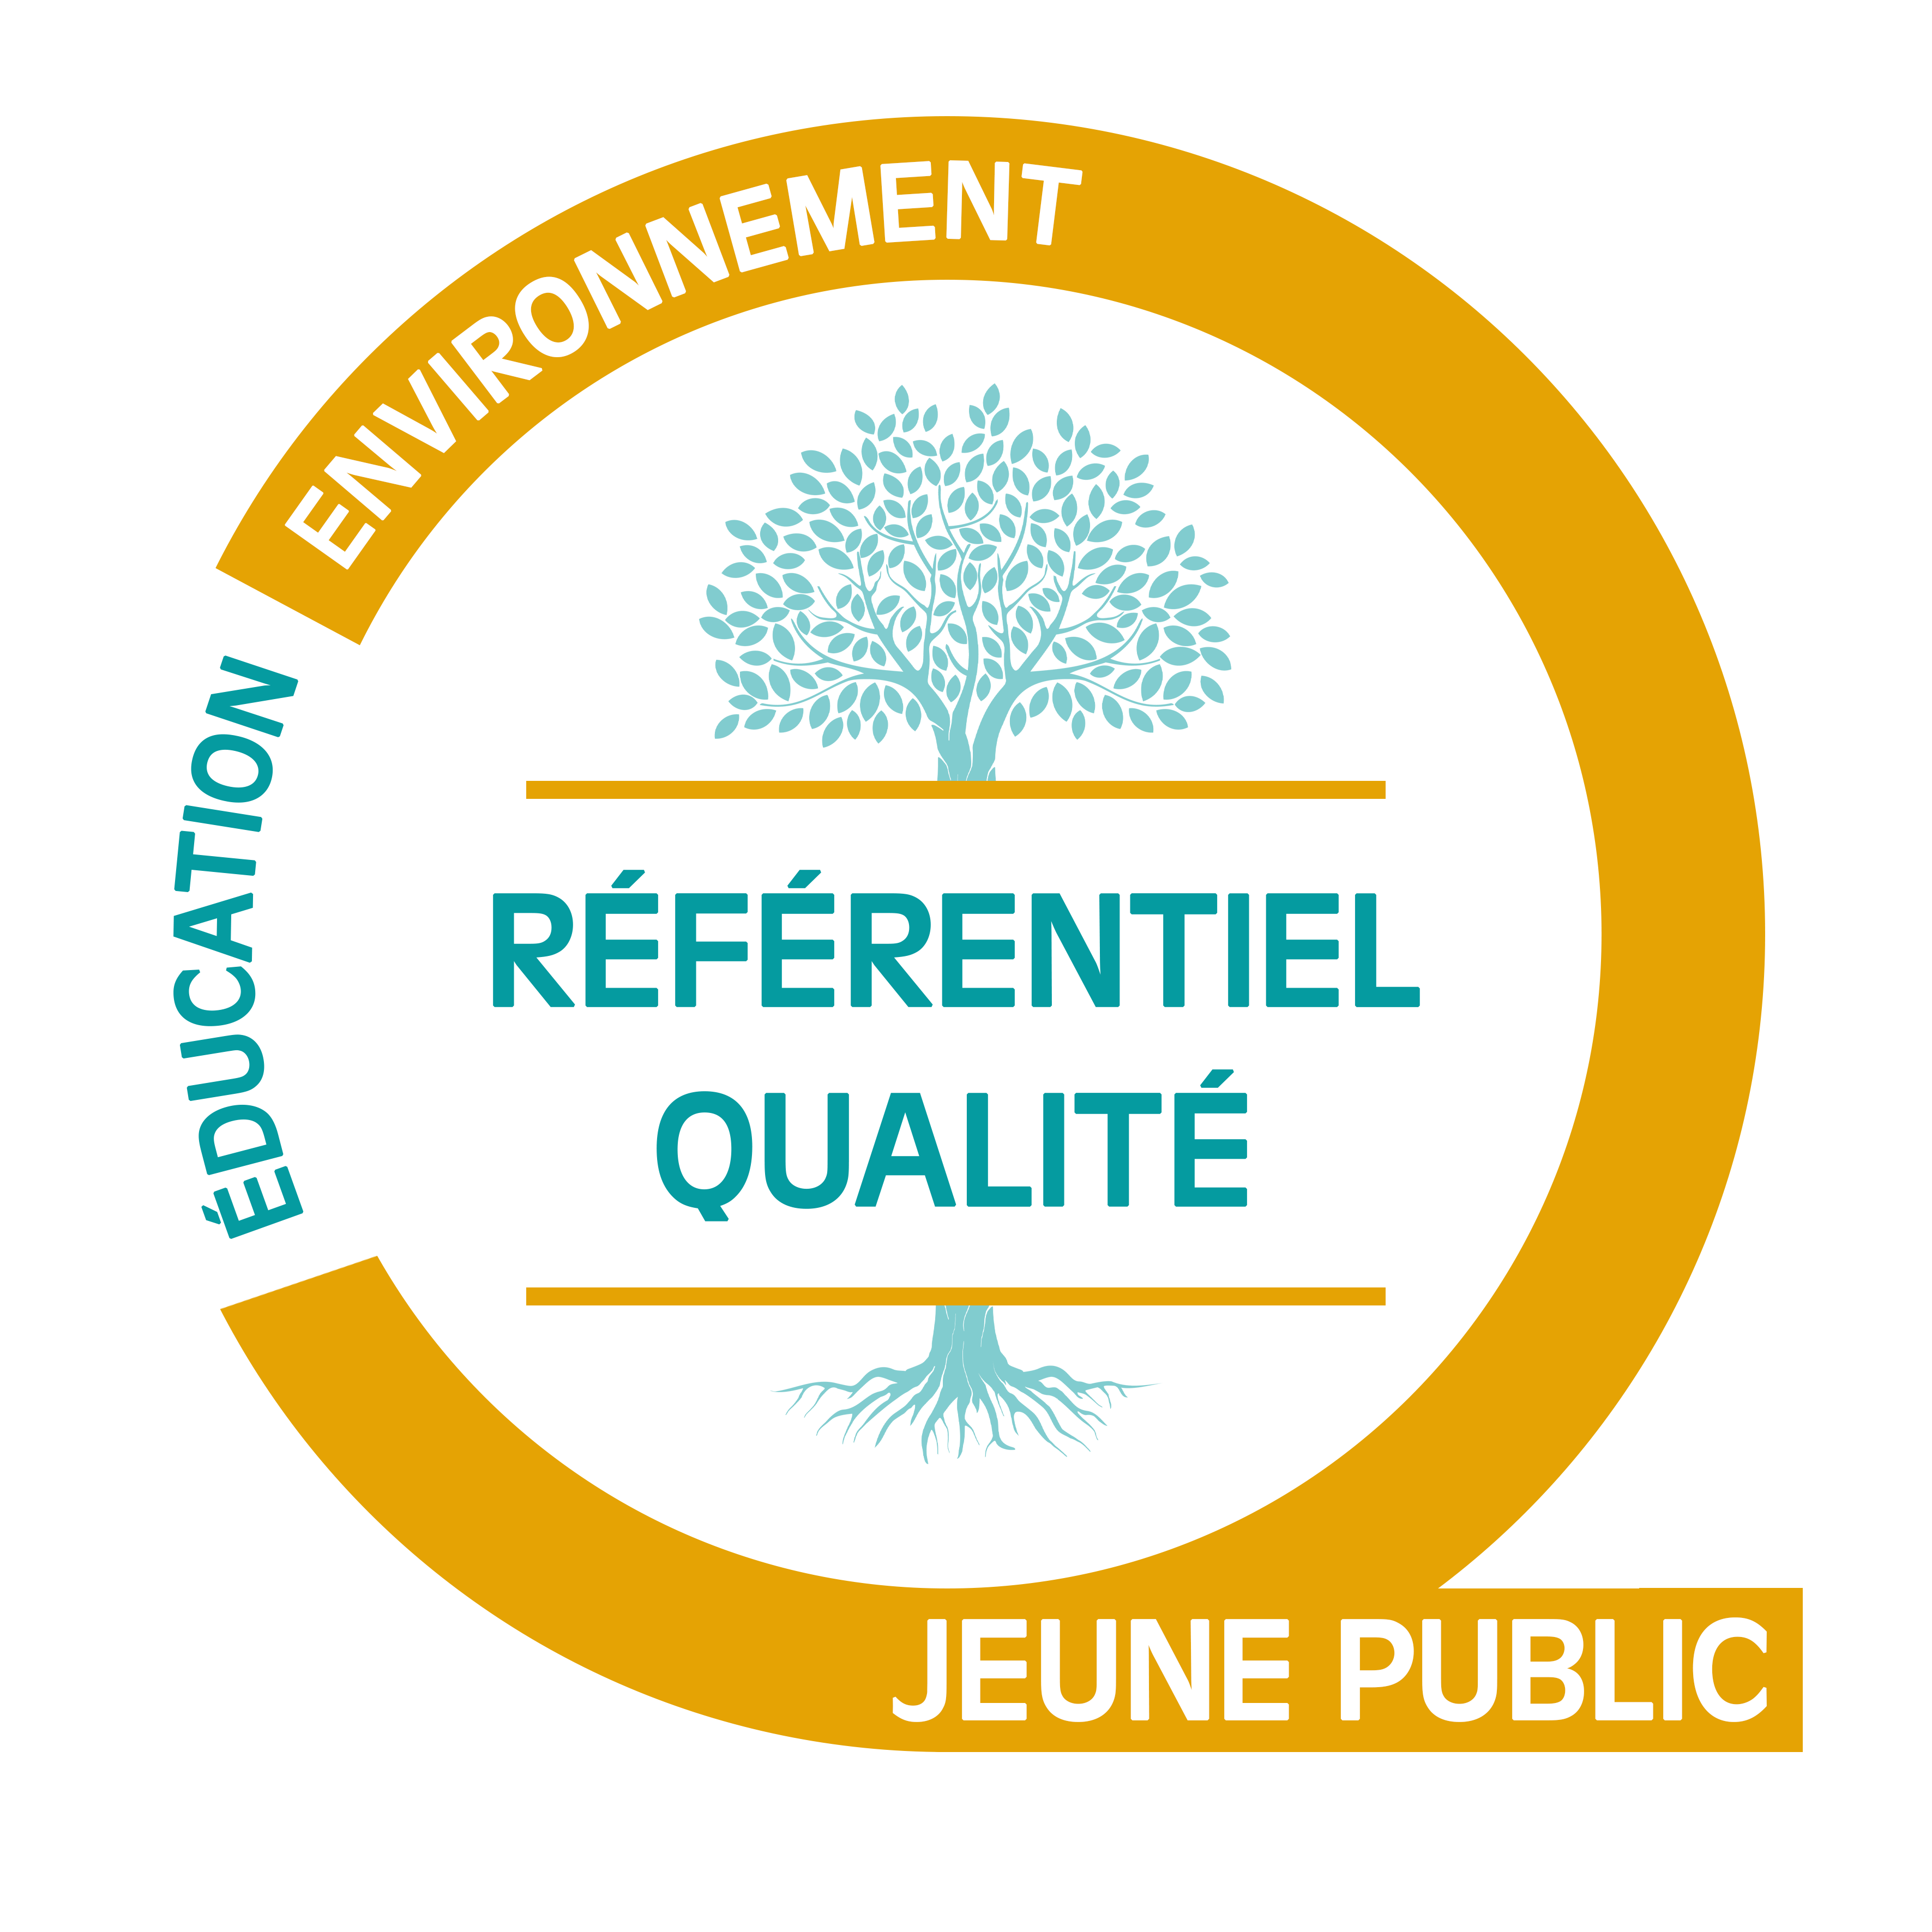 Referentiel Qualite Education Environnement Juin 2021 Jeune public